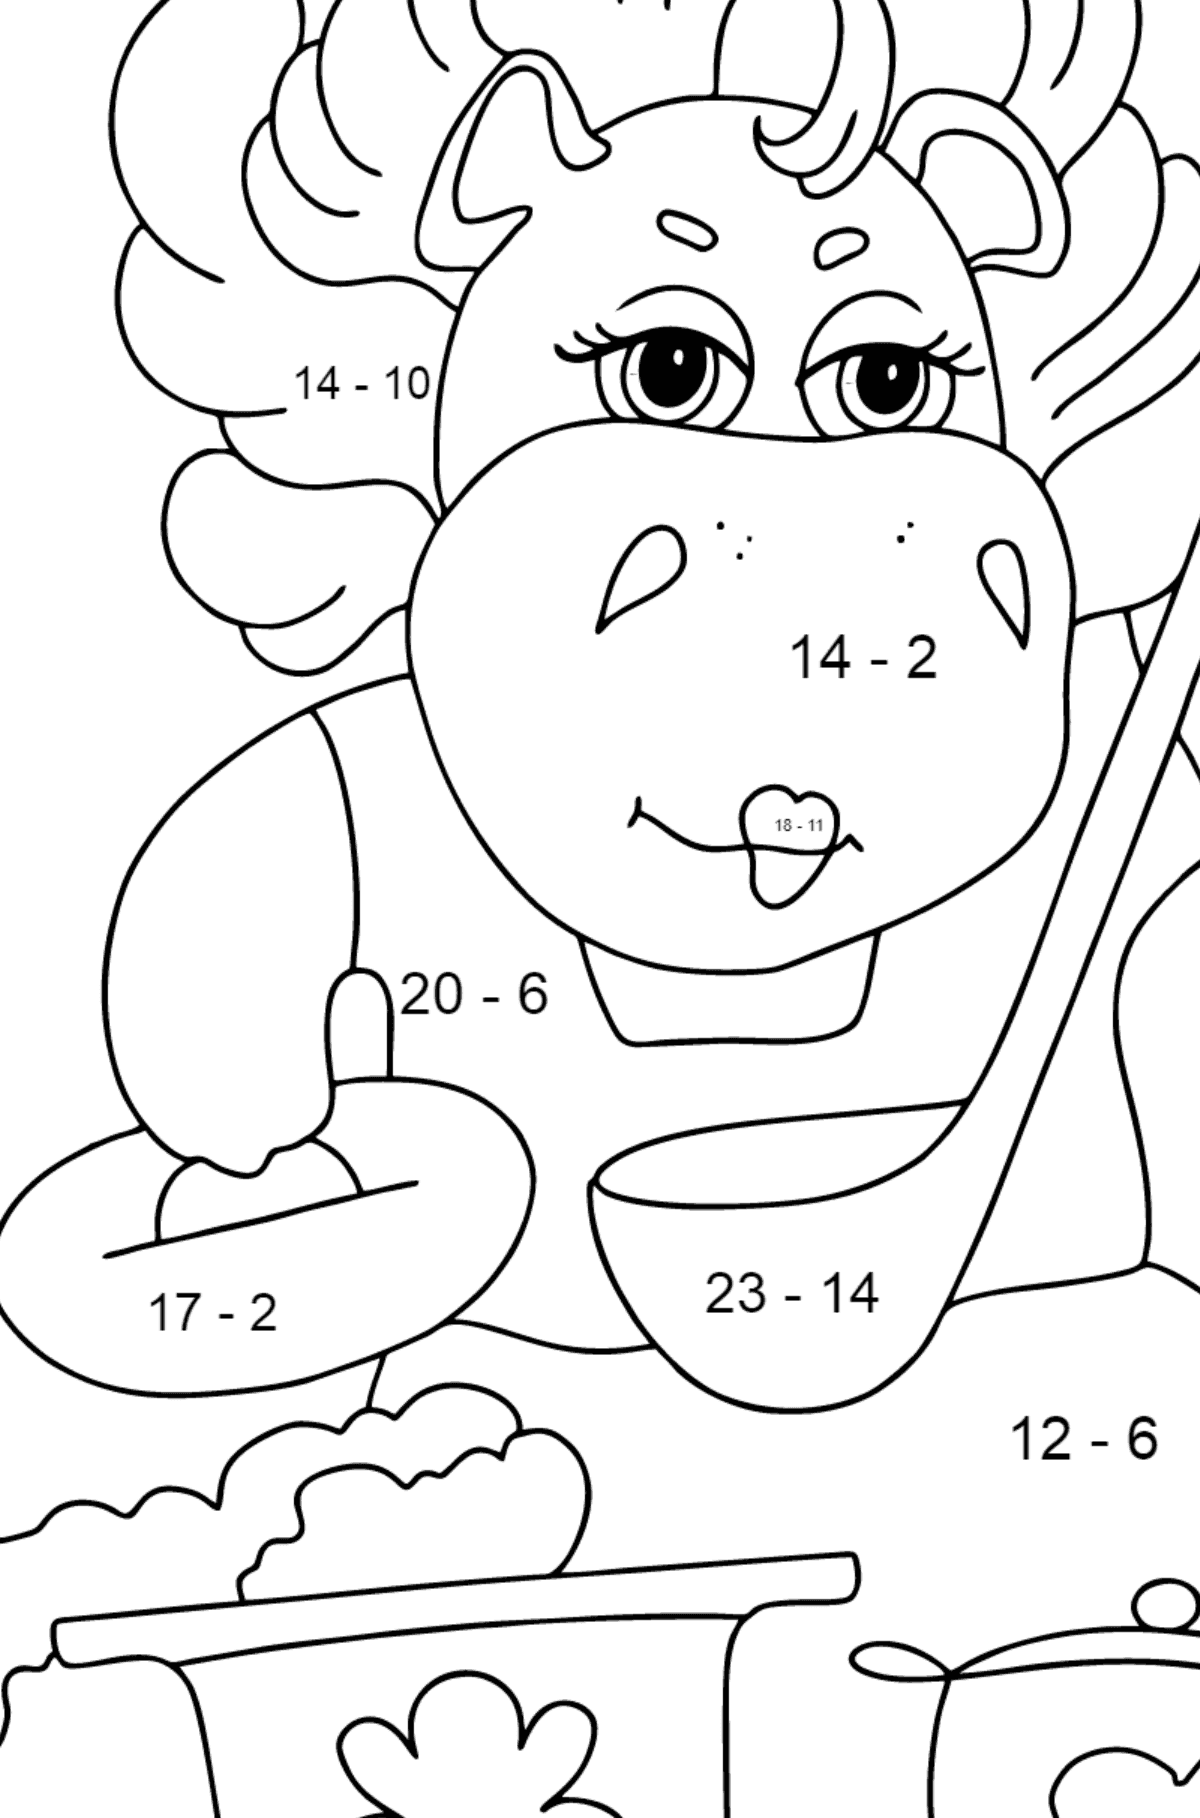 Dibujo de hipopótamo mágico (simple) para colorear - Colorear con Matemáticas - Restas para Niños